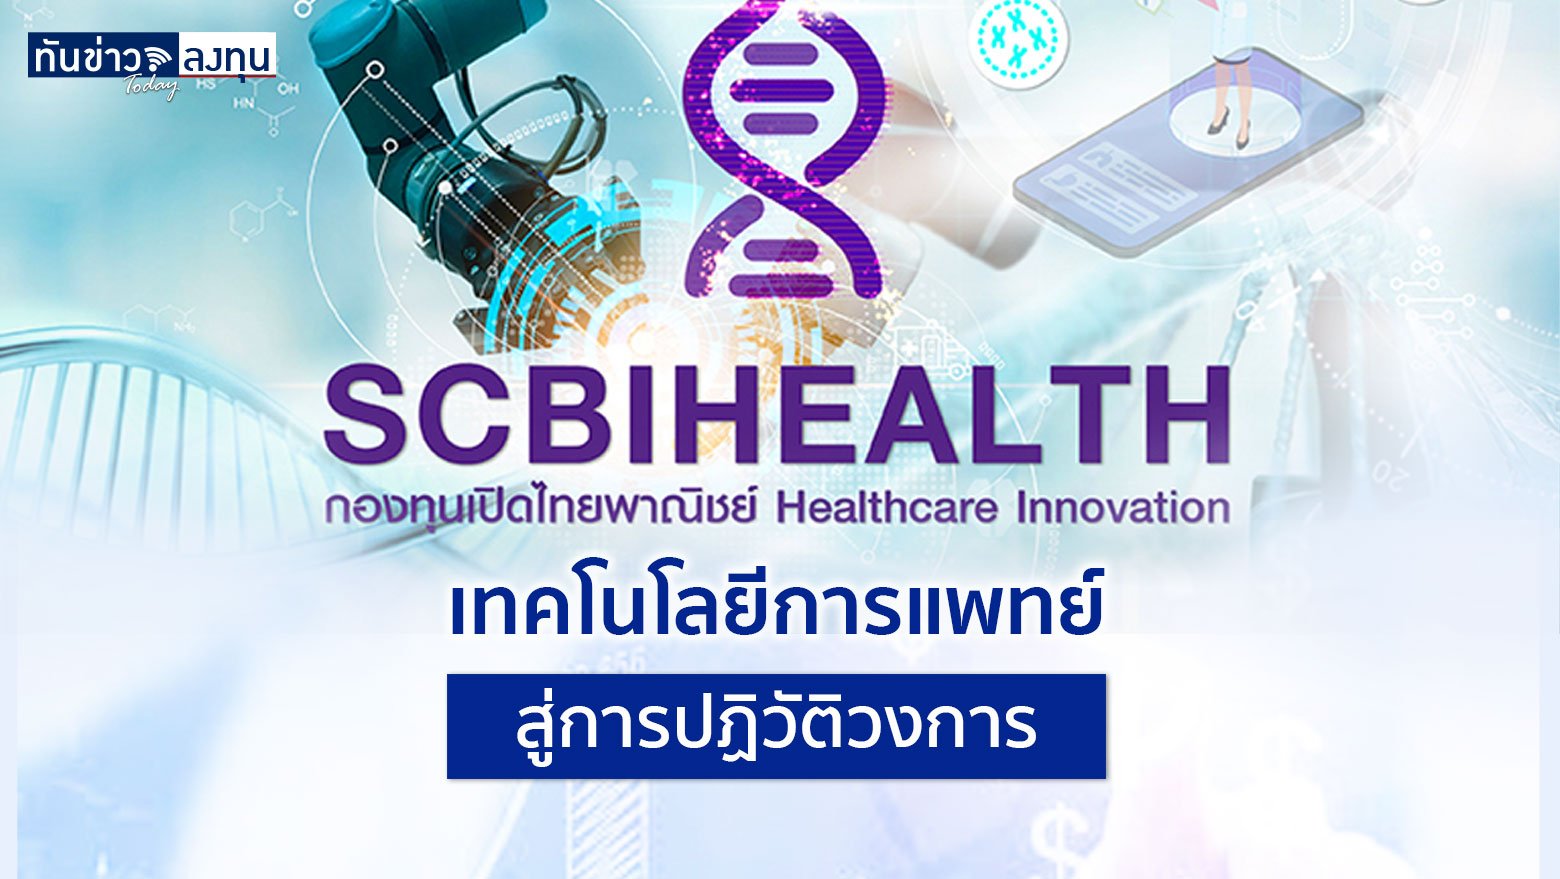 ชี้ช่องกองทุนเด่น : SCBIHEALTH เทคโนโลยีการแพทย์สู่การปฏิวัติวงการ